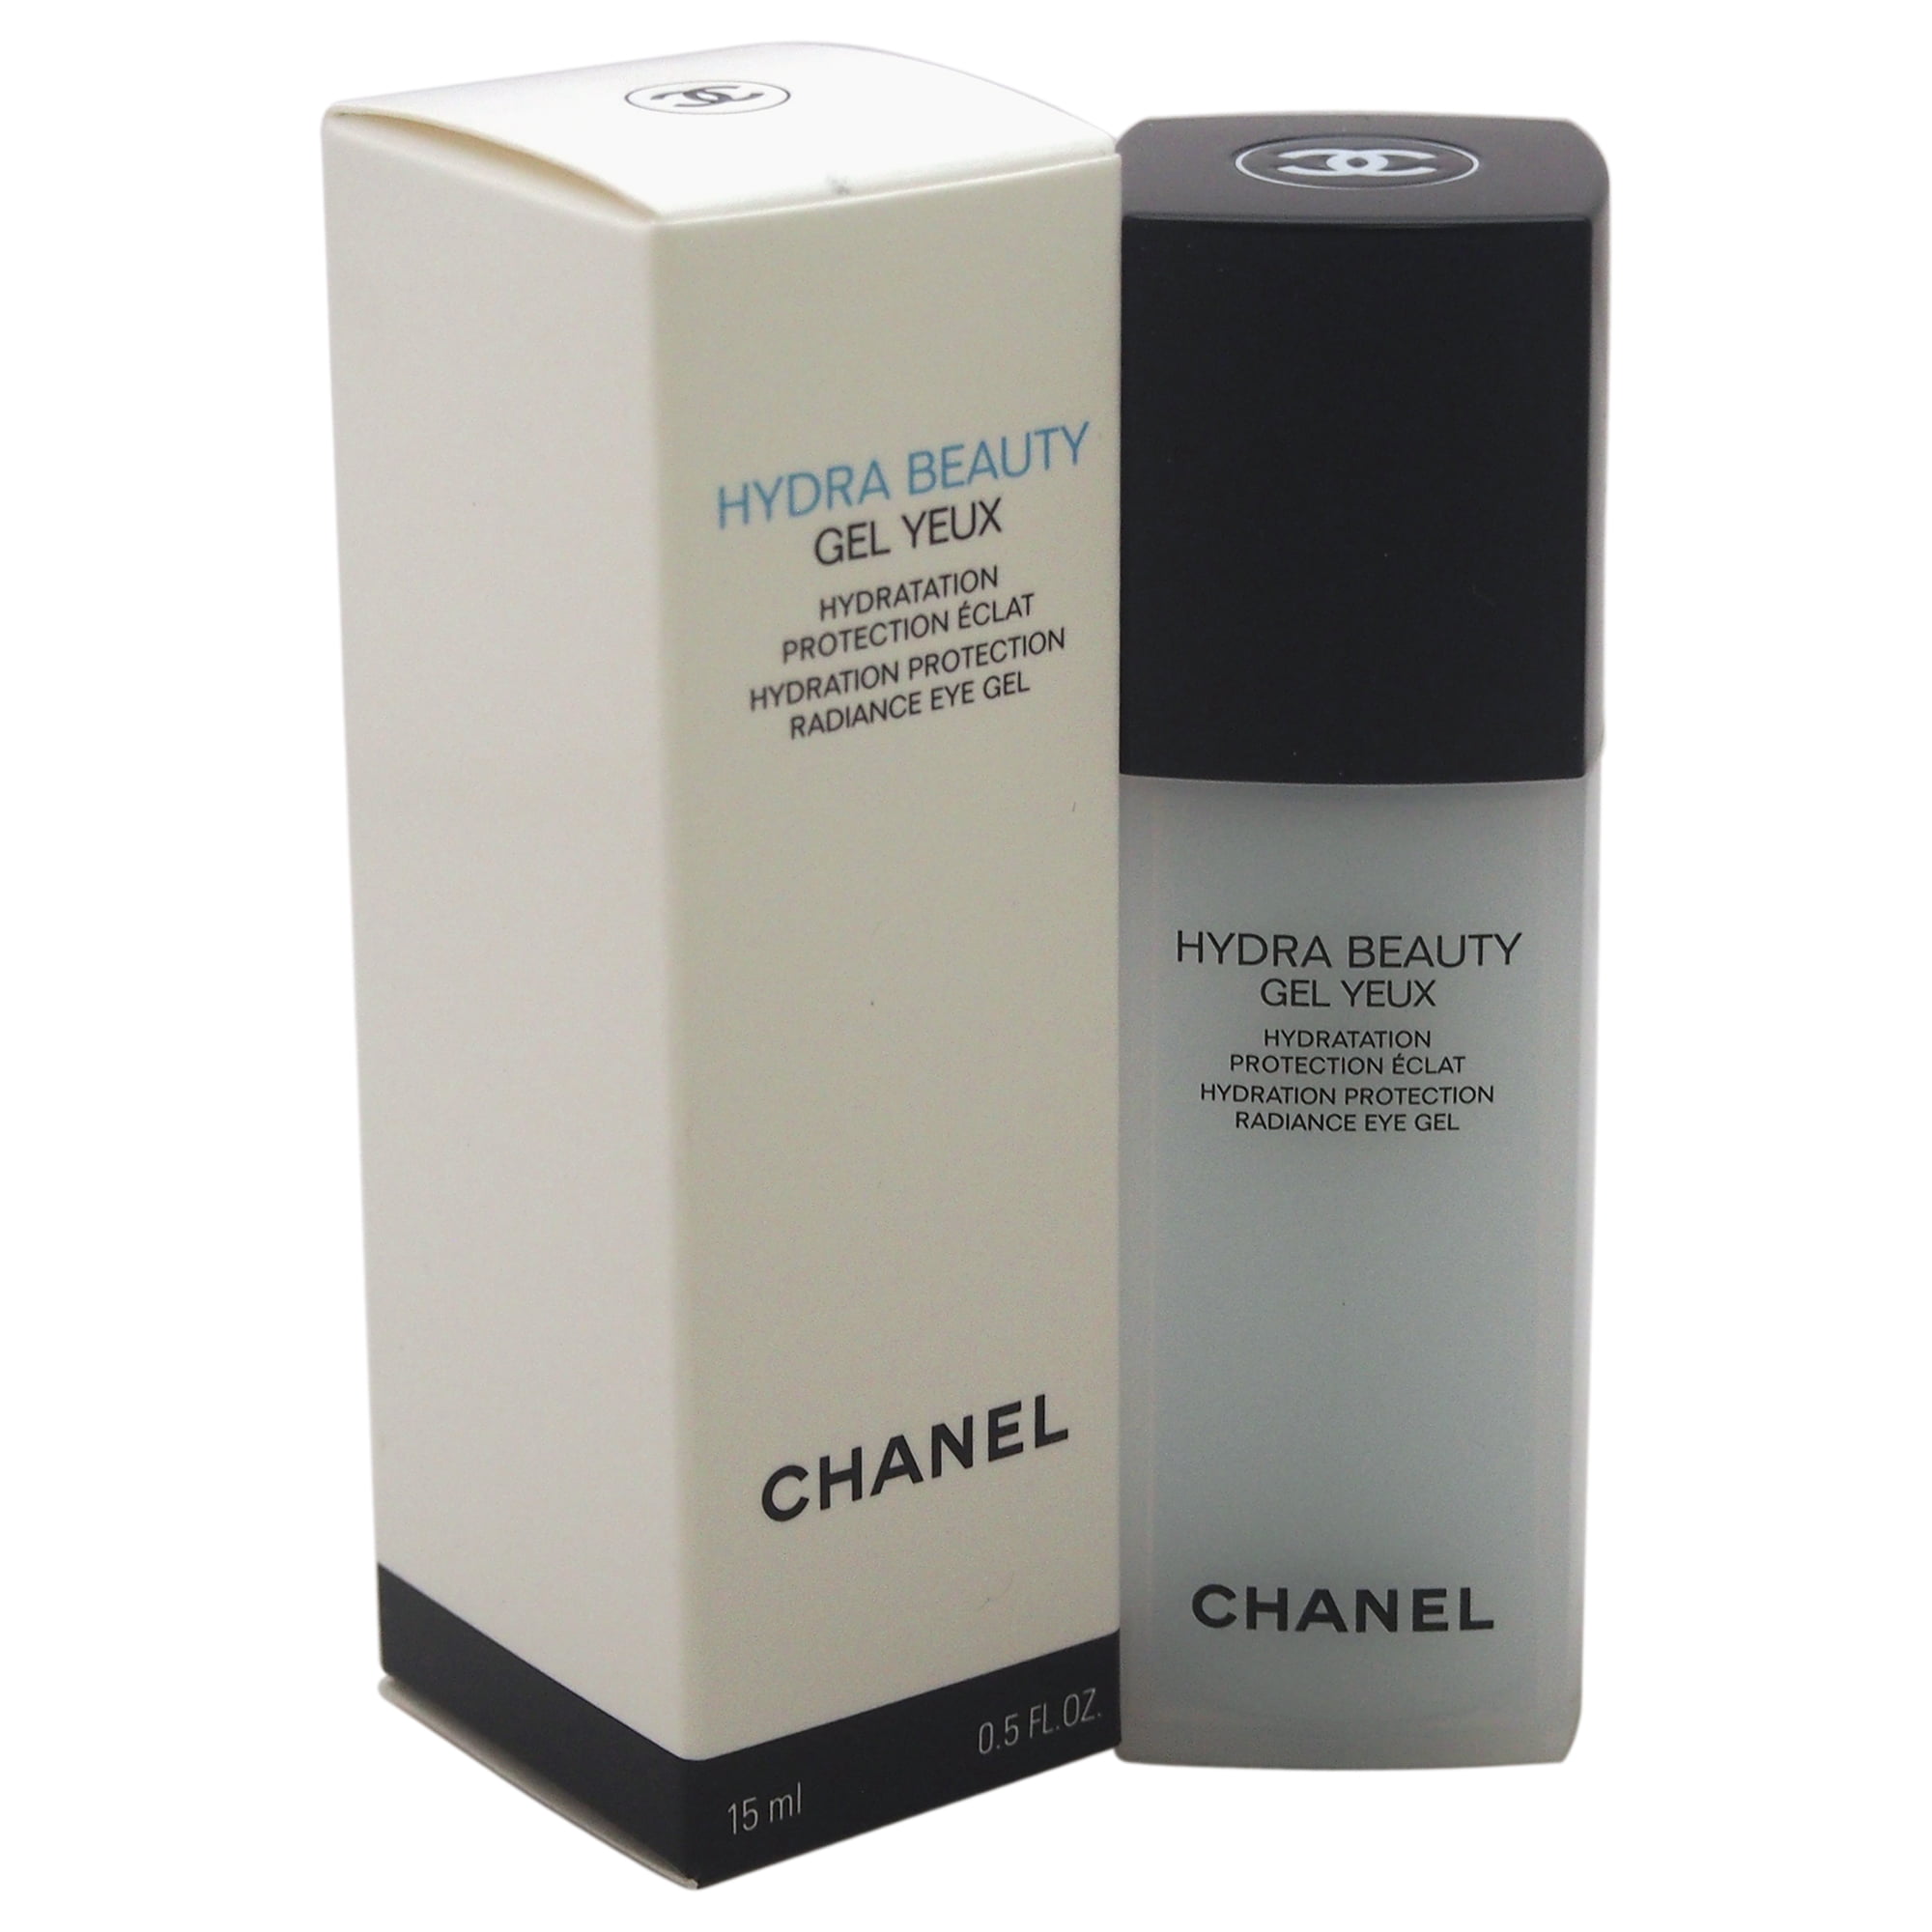 CHANEL, Skincare, Chanel Hydra Beauty Gel Yeux Hydration Eye Gel